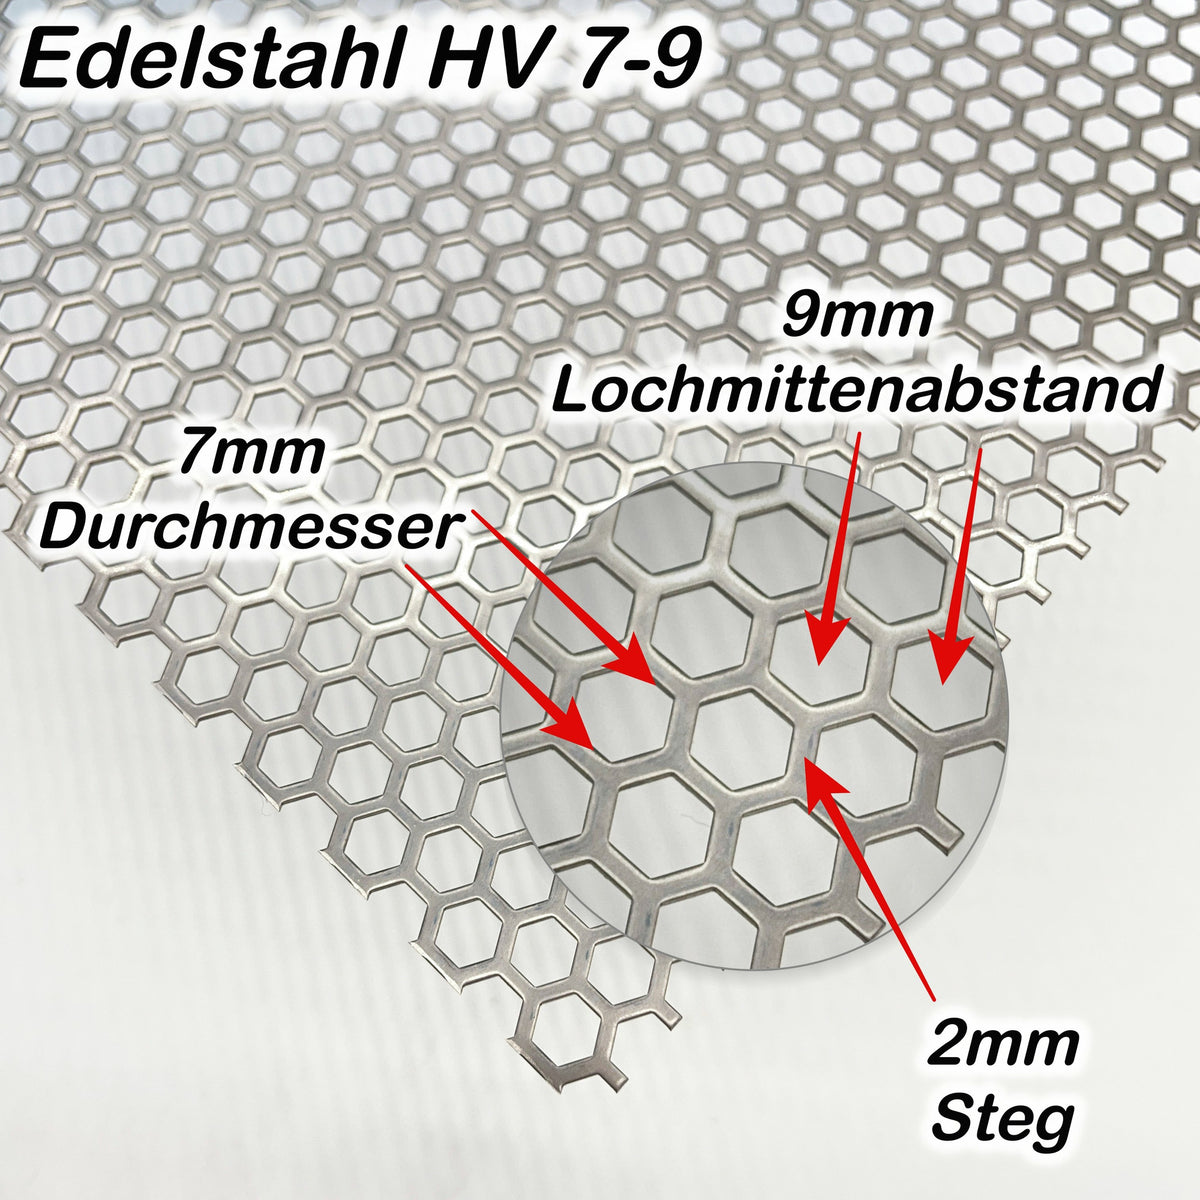 Edelstahl Lochblech Hexagonal HV7-9 - 1,0mm dick